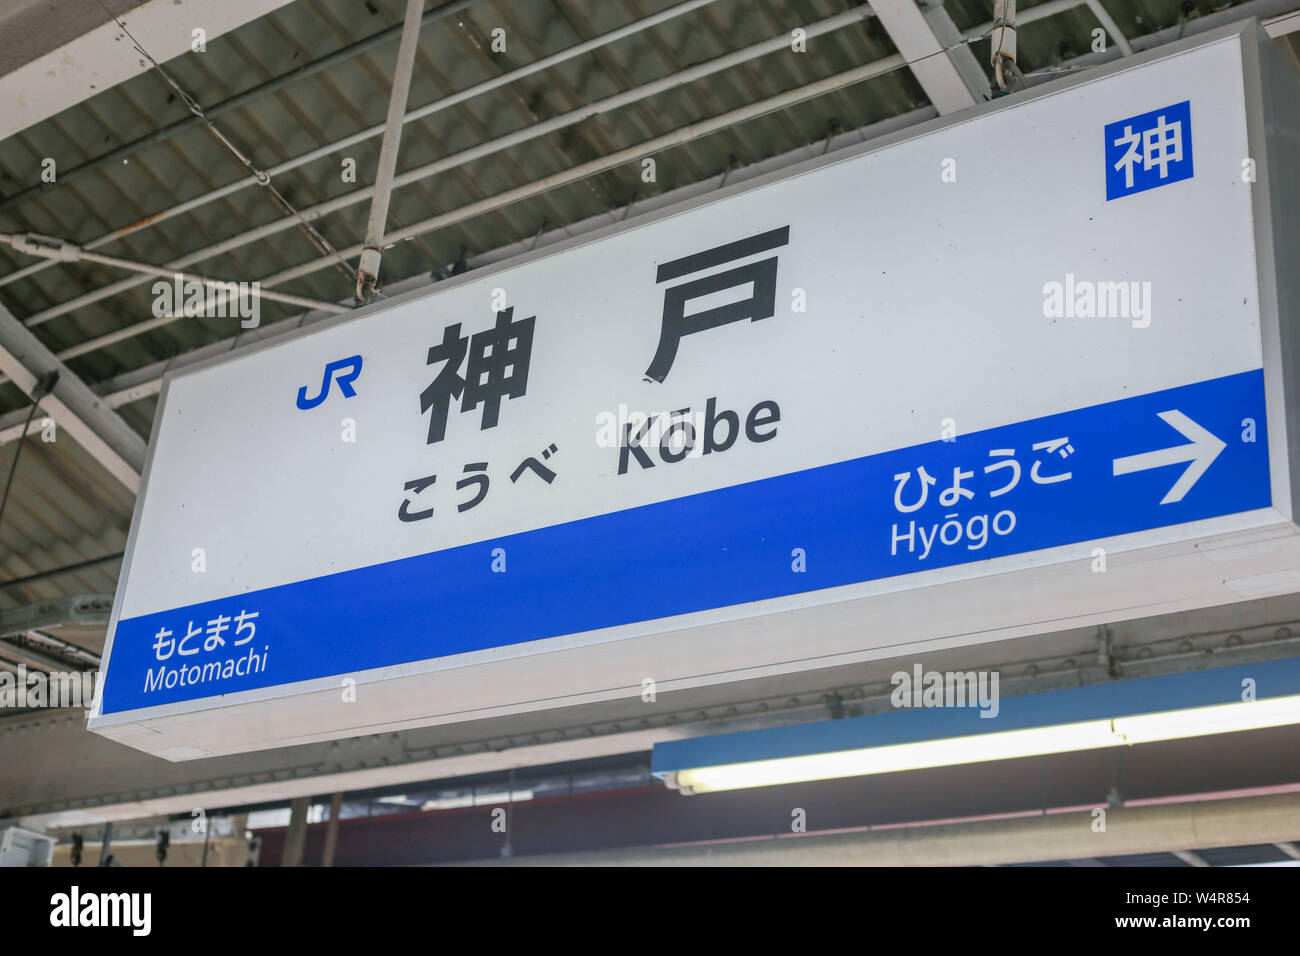 Shin kobe station immagini e fotografie stock ad alta risoluzione - Alamy